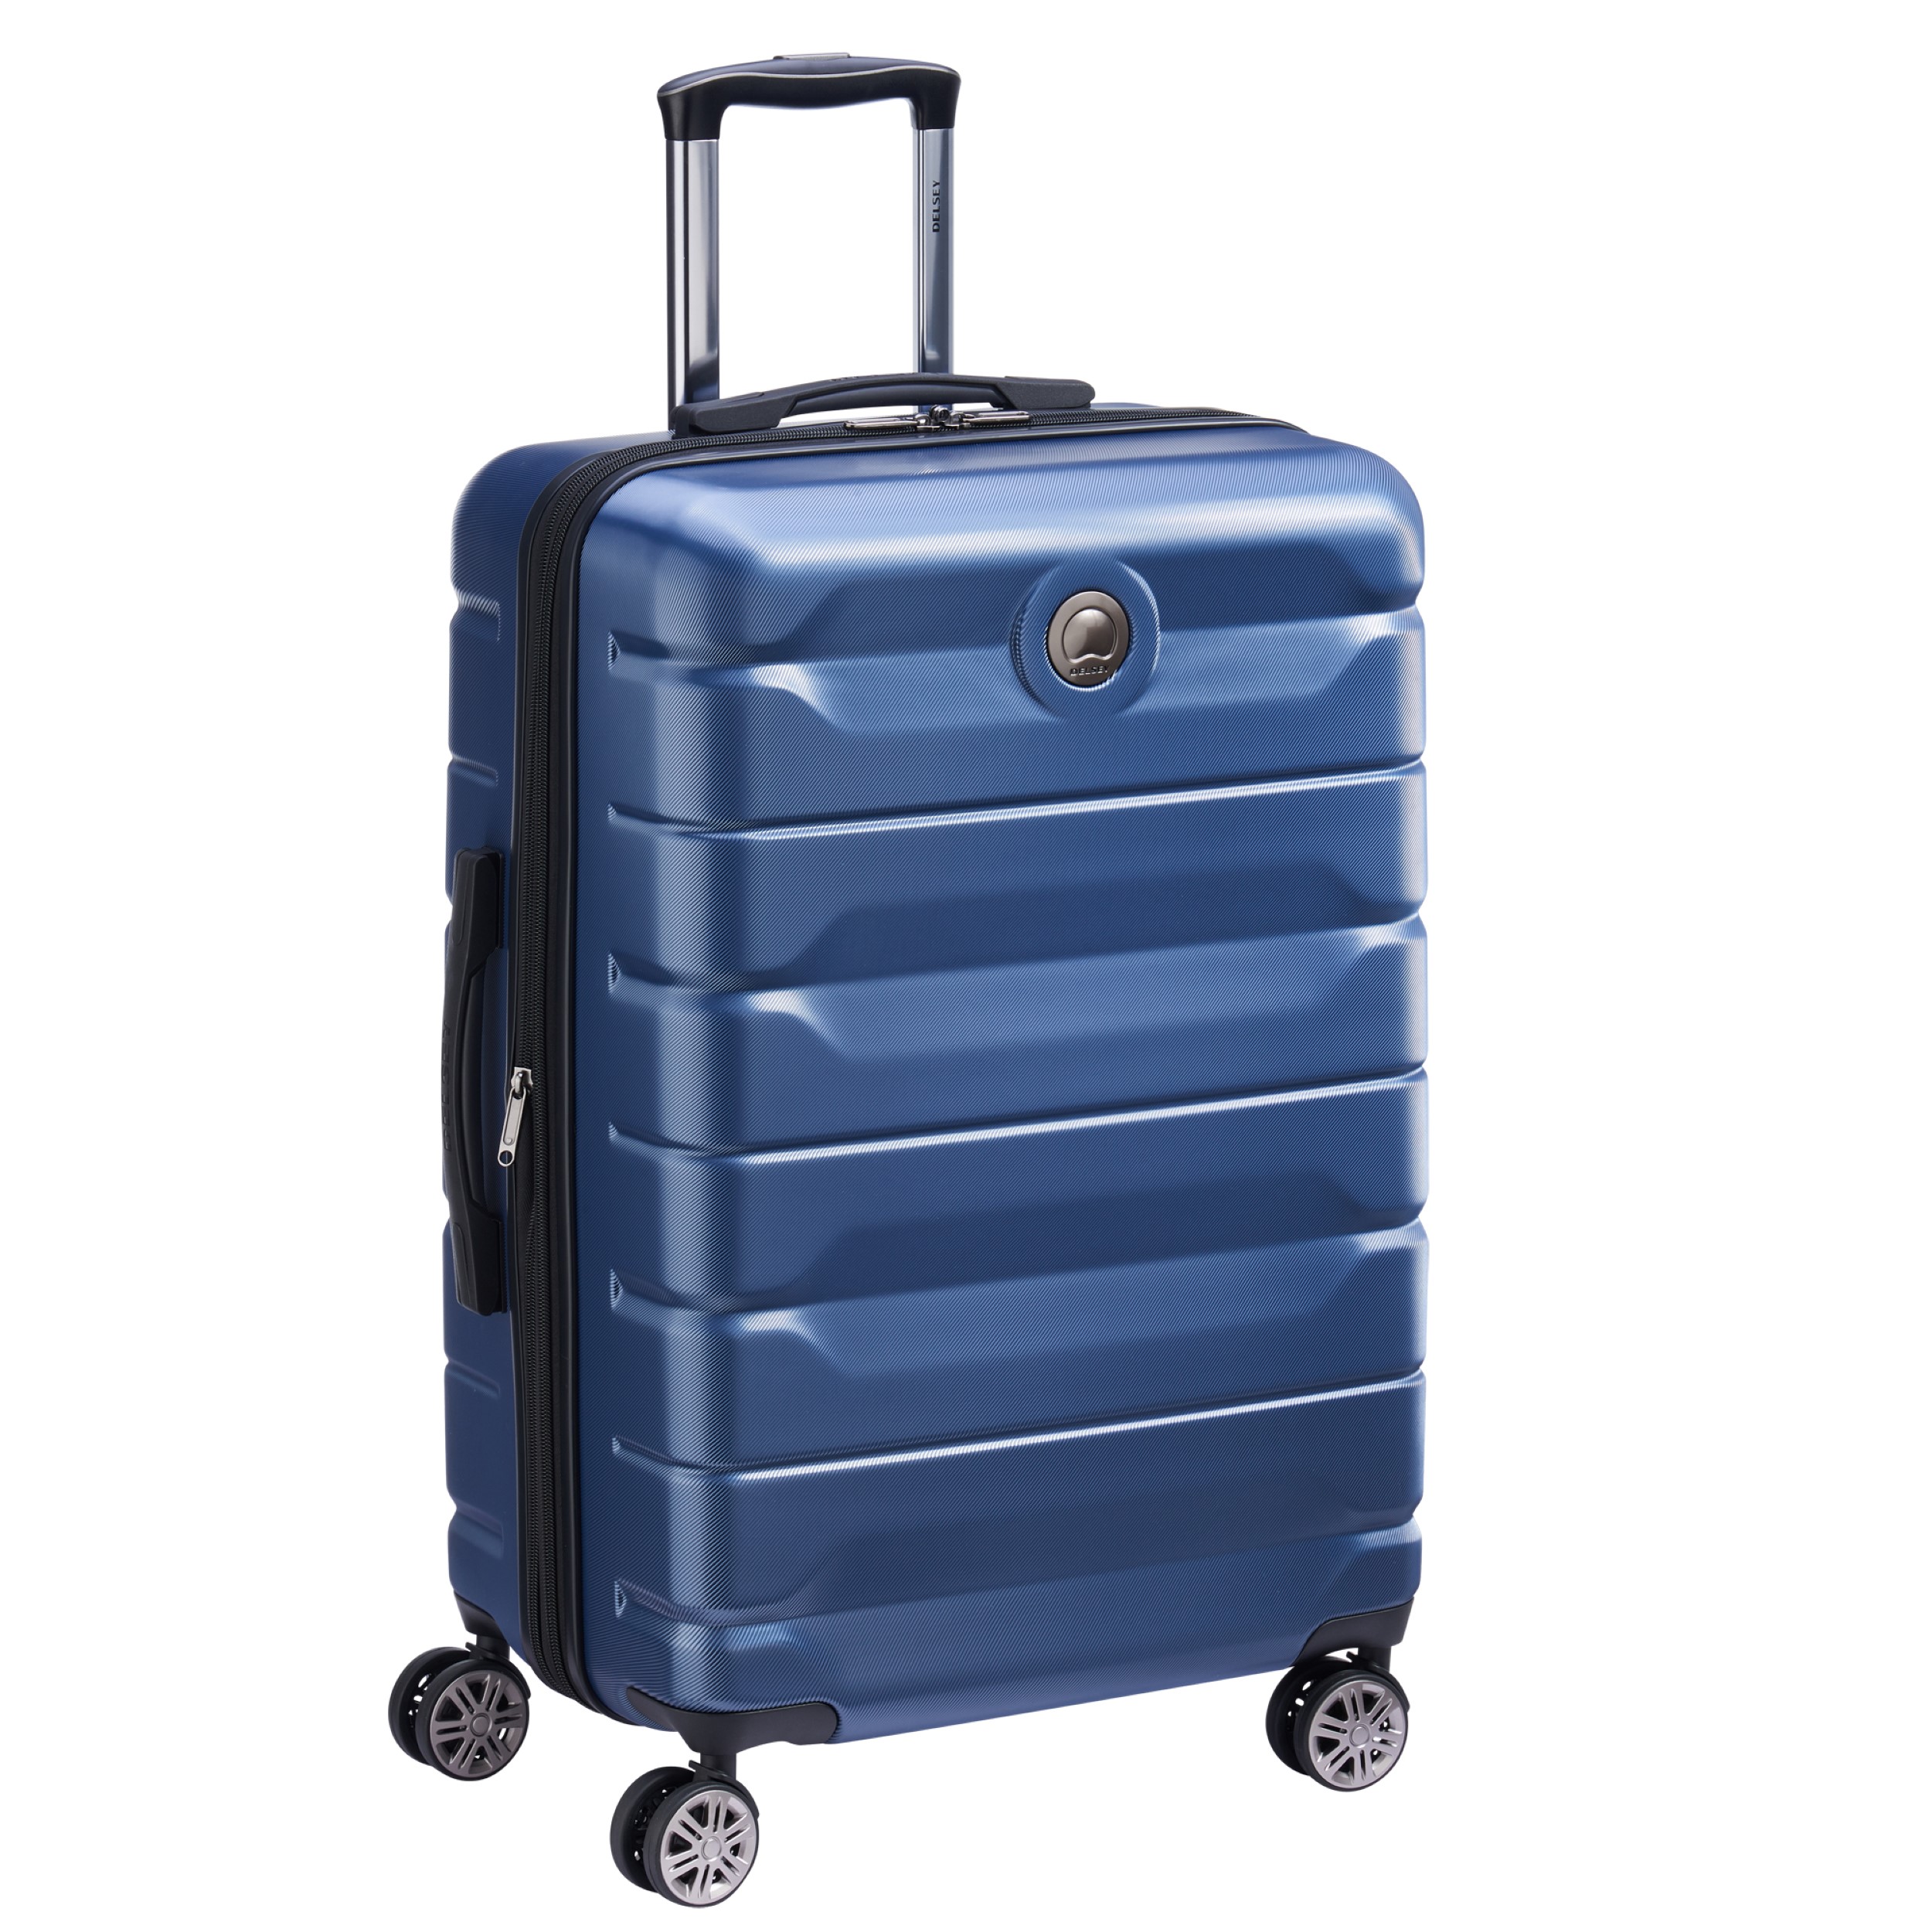 چمدان دلسی مدل ایر آرمور کد 3866820 سایز متوسط